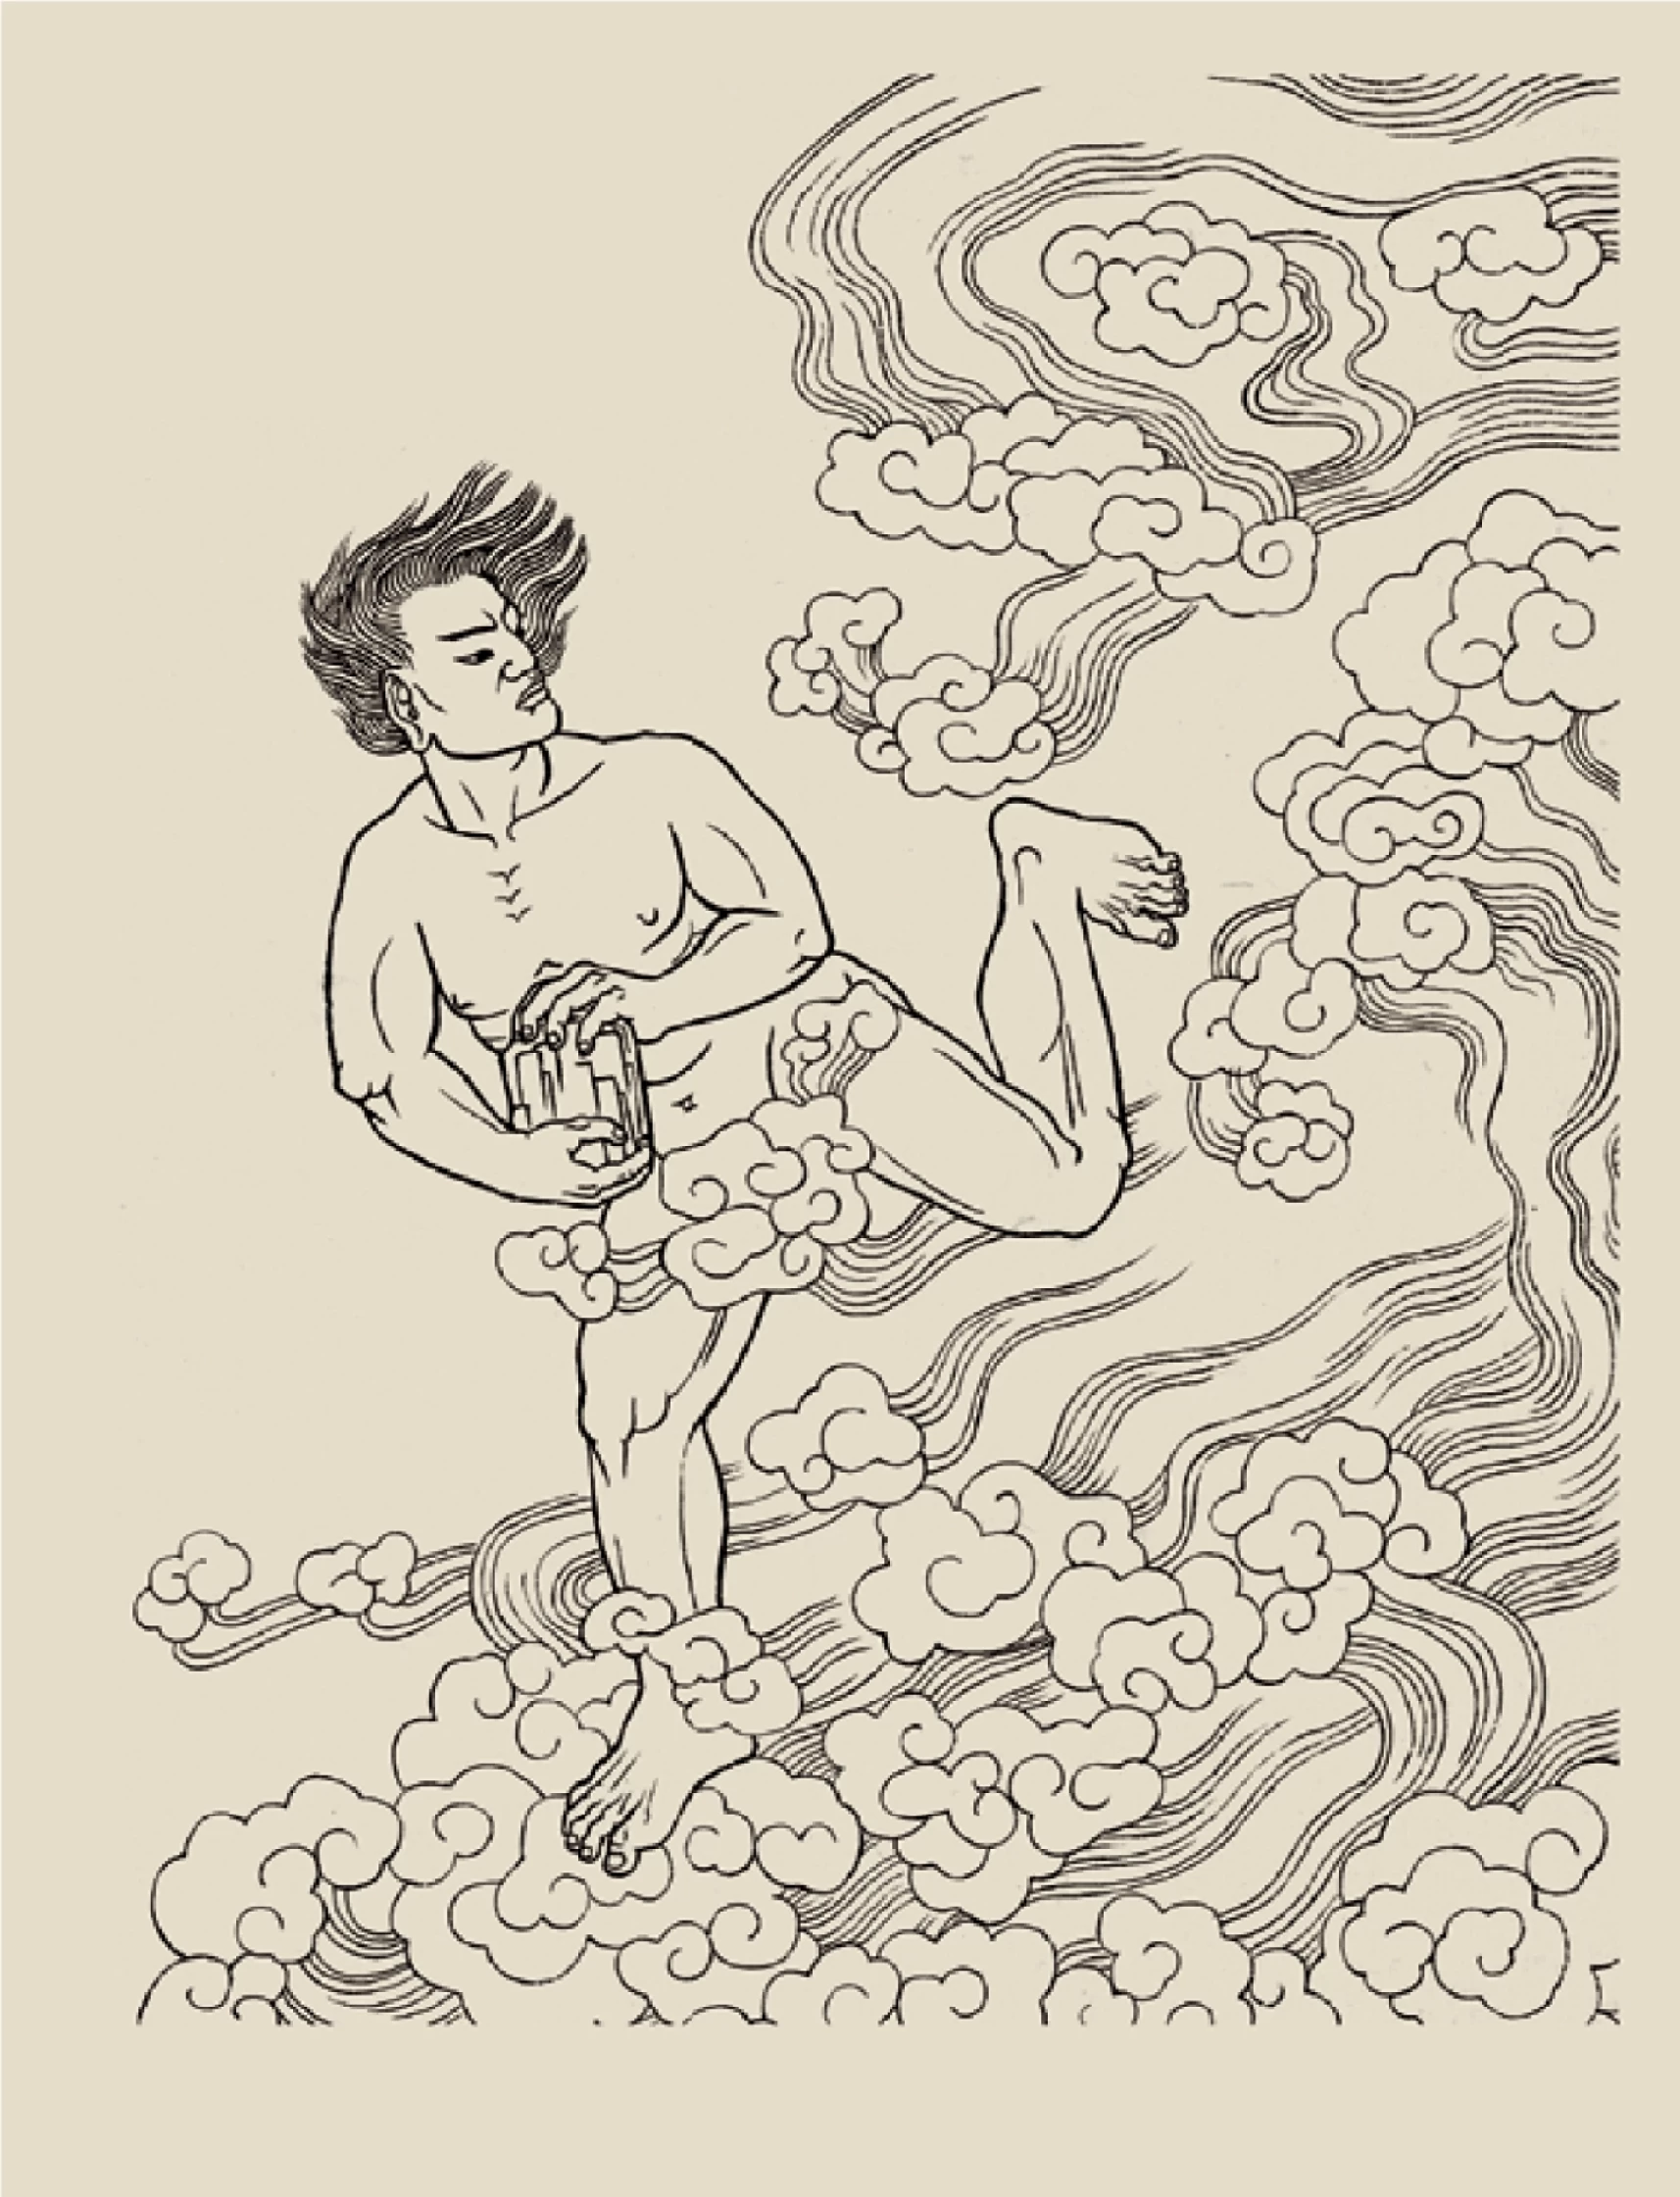 奚淞的中國神話故事白描系列──〈鯀治水，偷息壤〉；奚淞提供-圖片